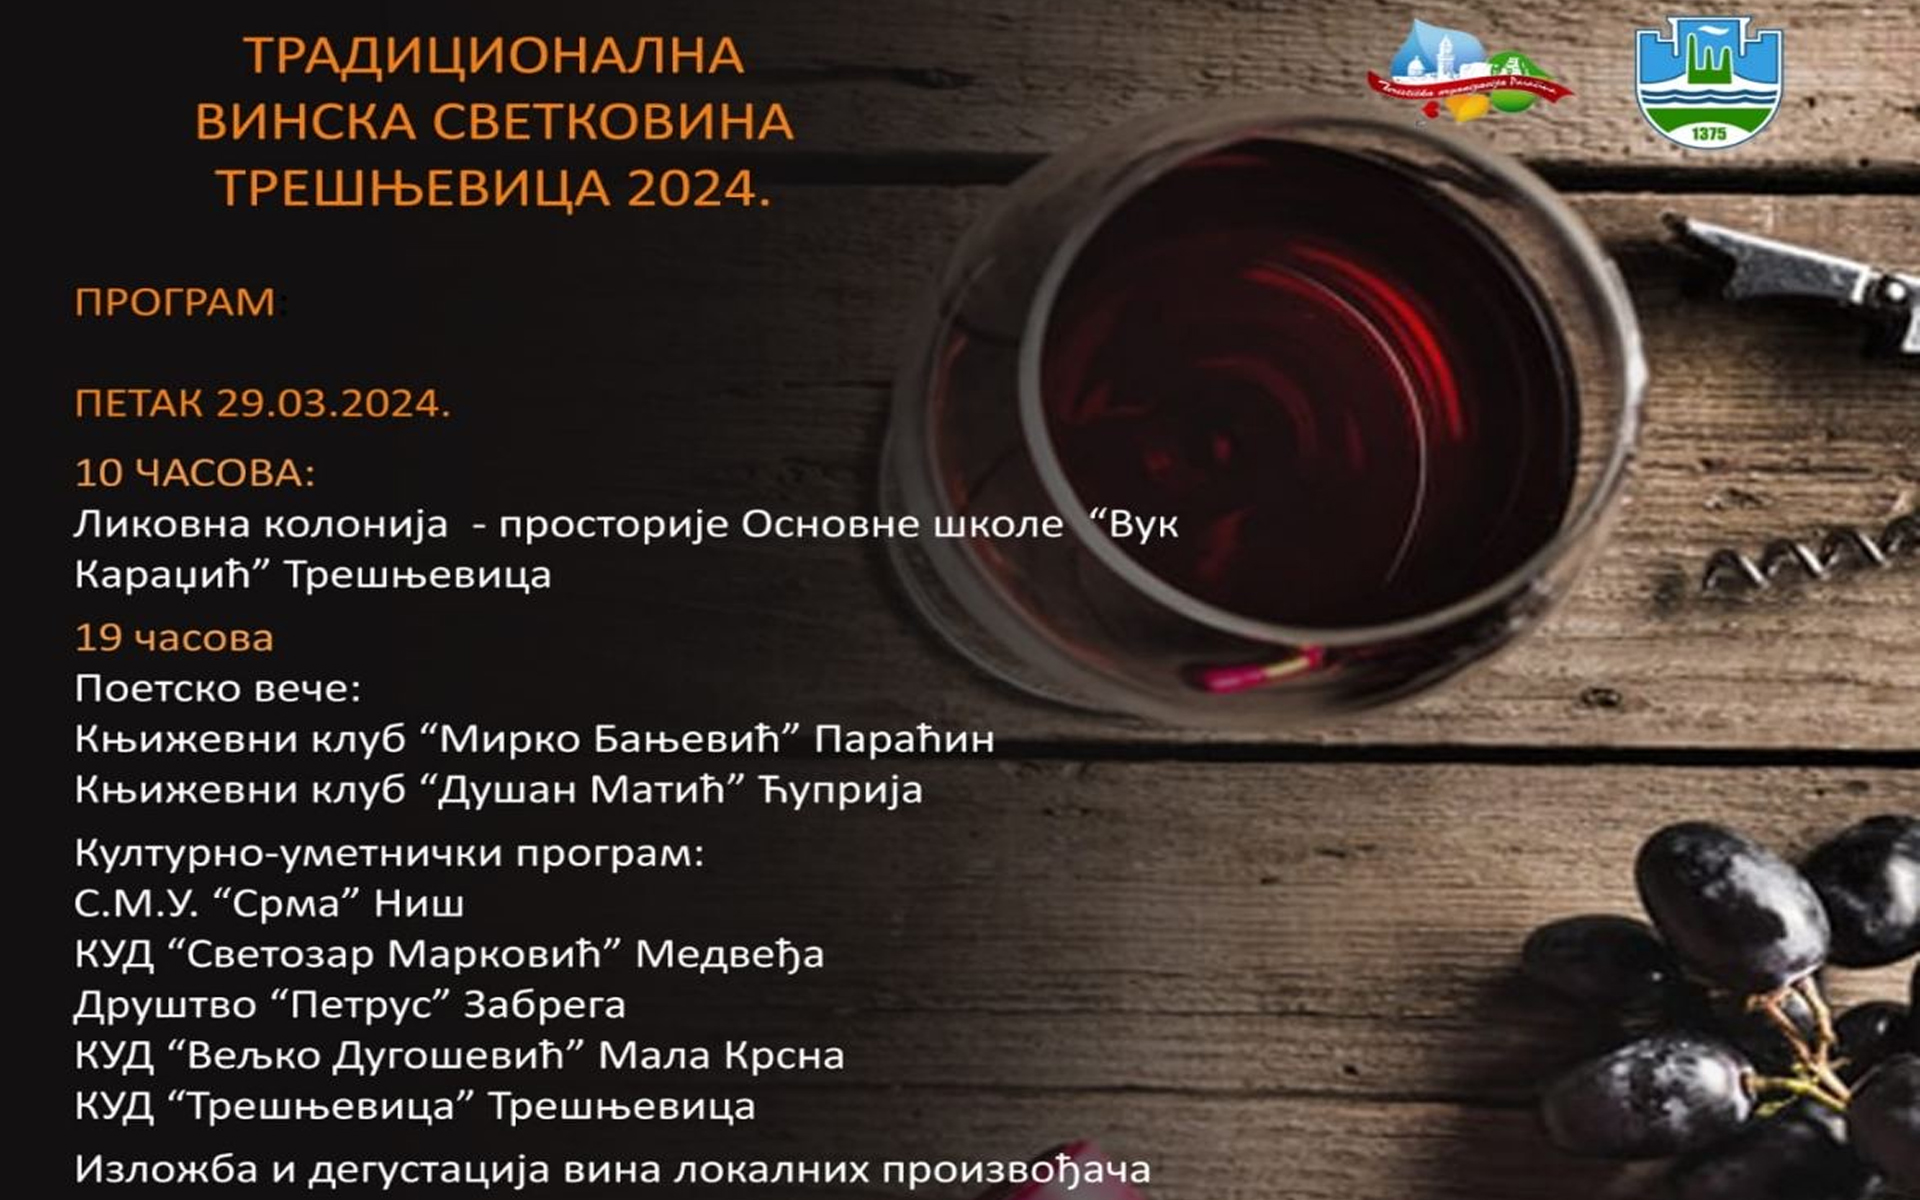 Narednog vikenda tradicionalna svetkovina Dani vina u Trešnjevici